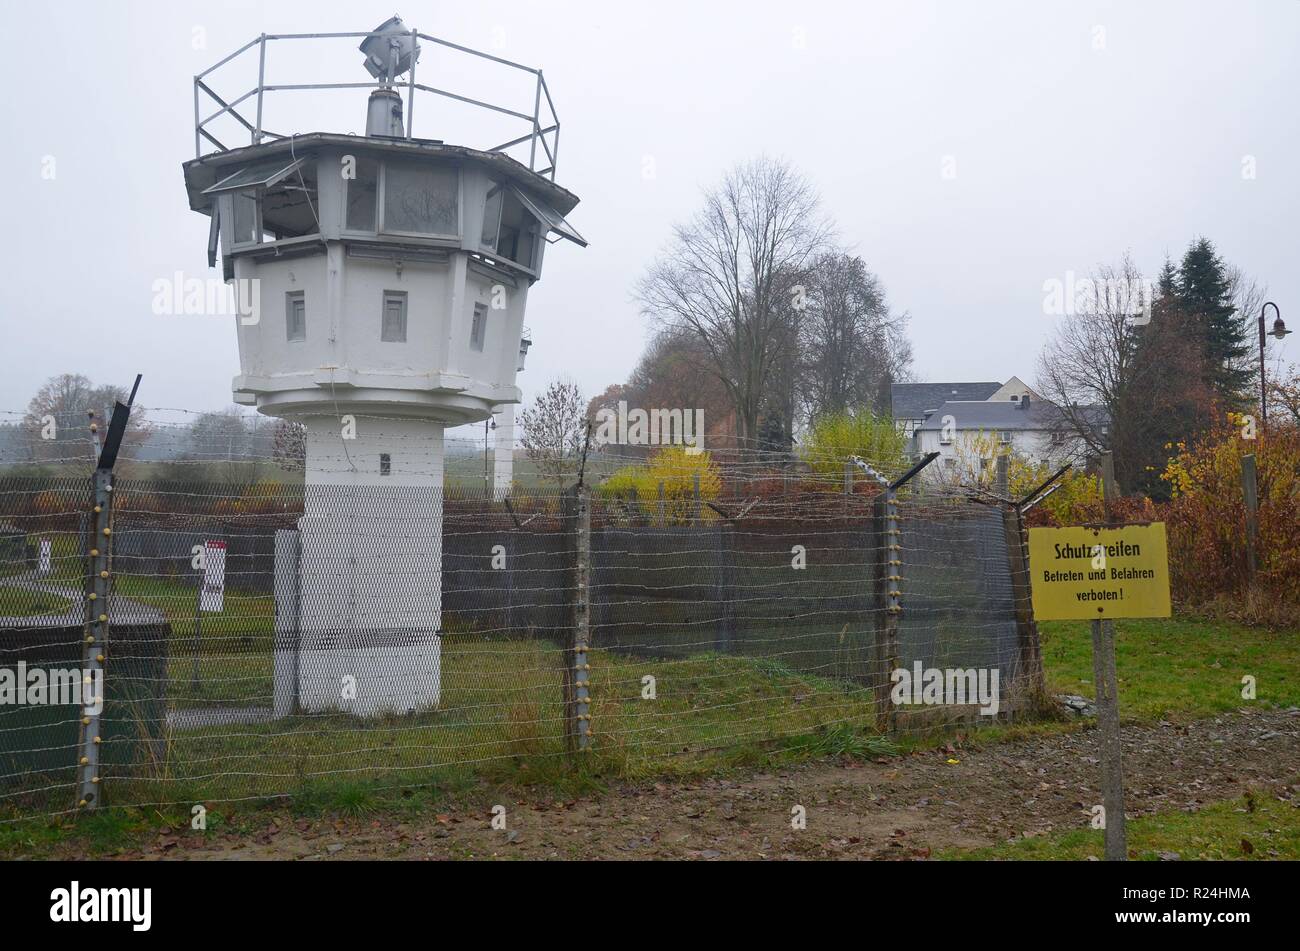 Mödlareuth, ein Dorf in Bayern und Thüringen, bis 1989 verlief die Grenze zwischen der BRD und der DDR hier. Gedenkstätte, Museum. Stock Photo